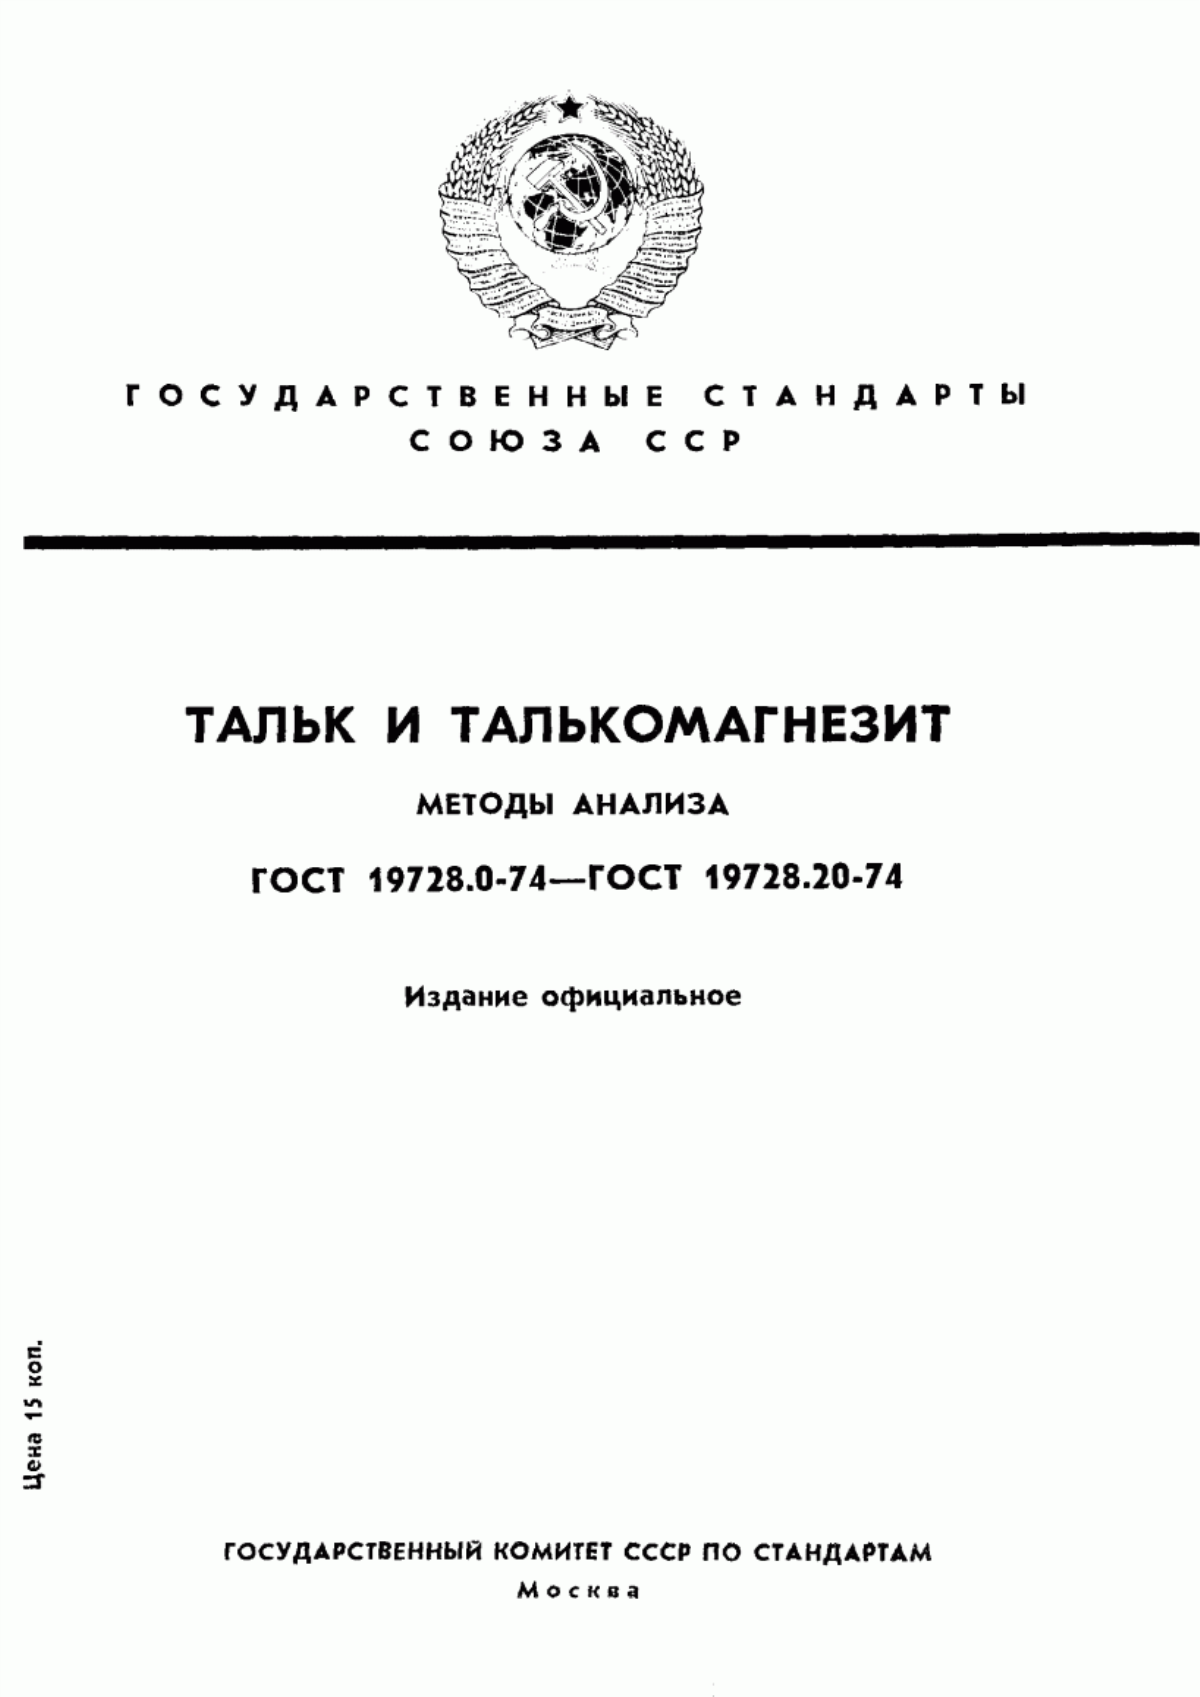 ГОСТ 19728.0-74 Тальк и талькомагнезит. Общие требования к методам анализа